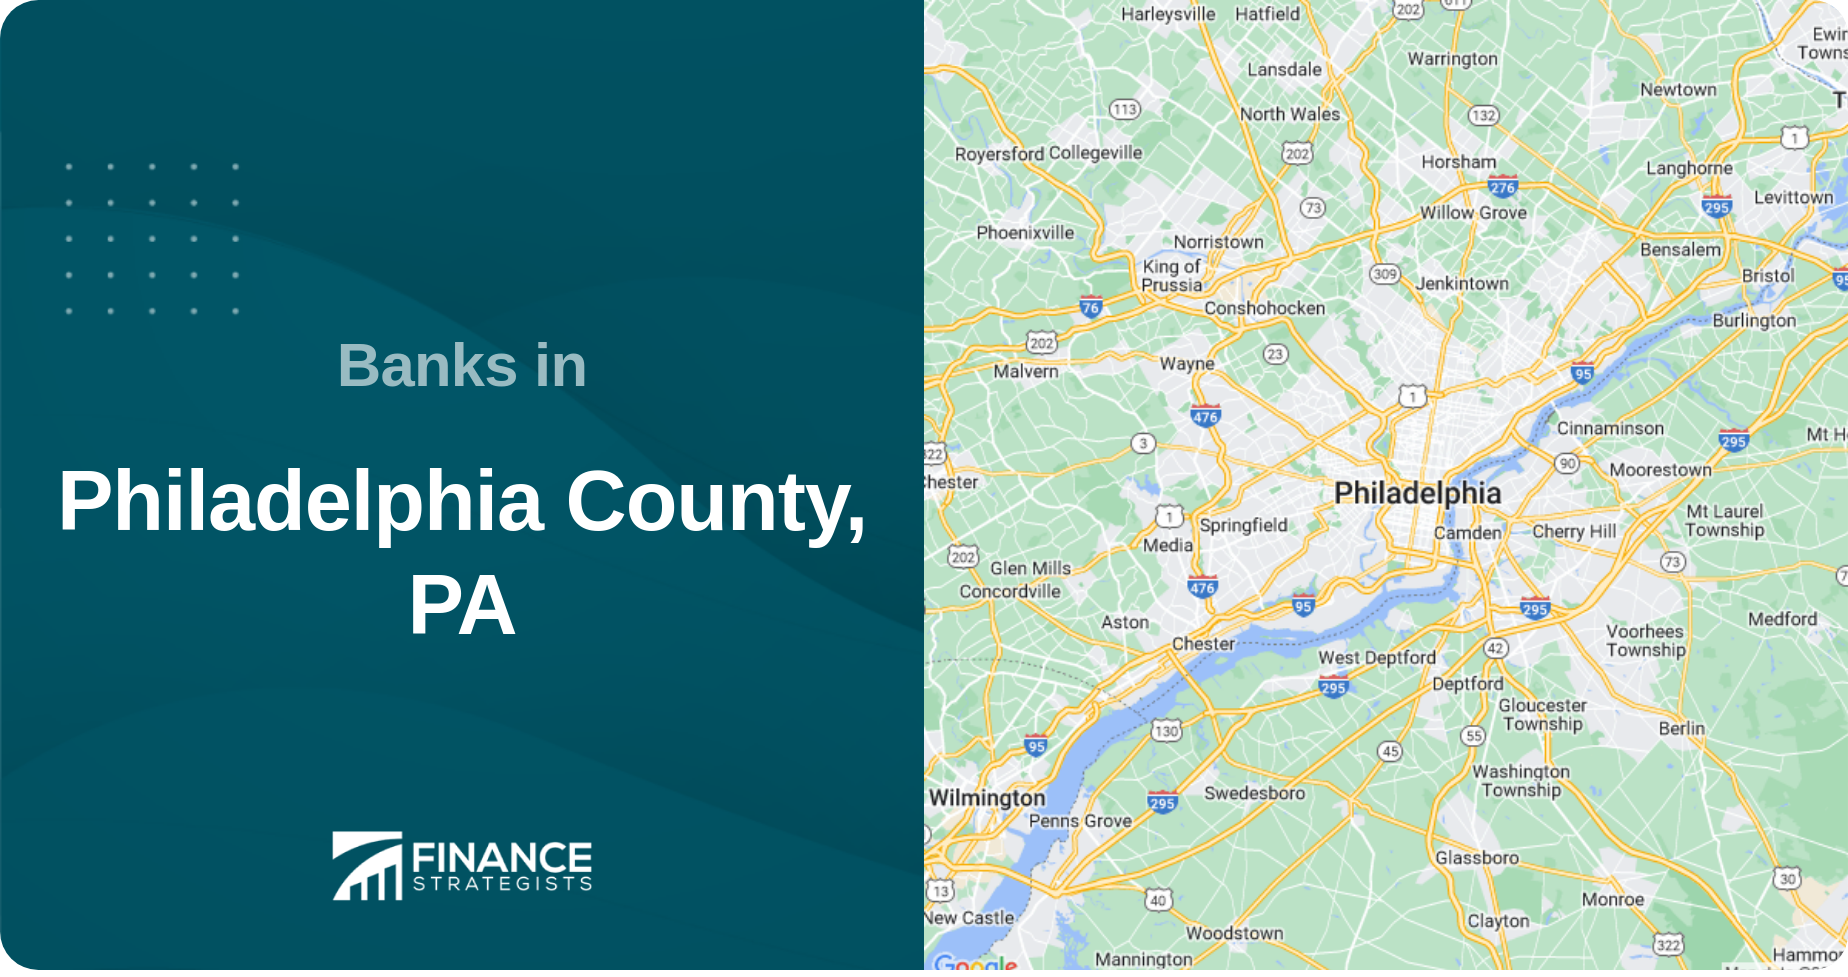 Banks in Philadelphia County, PA